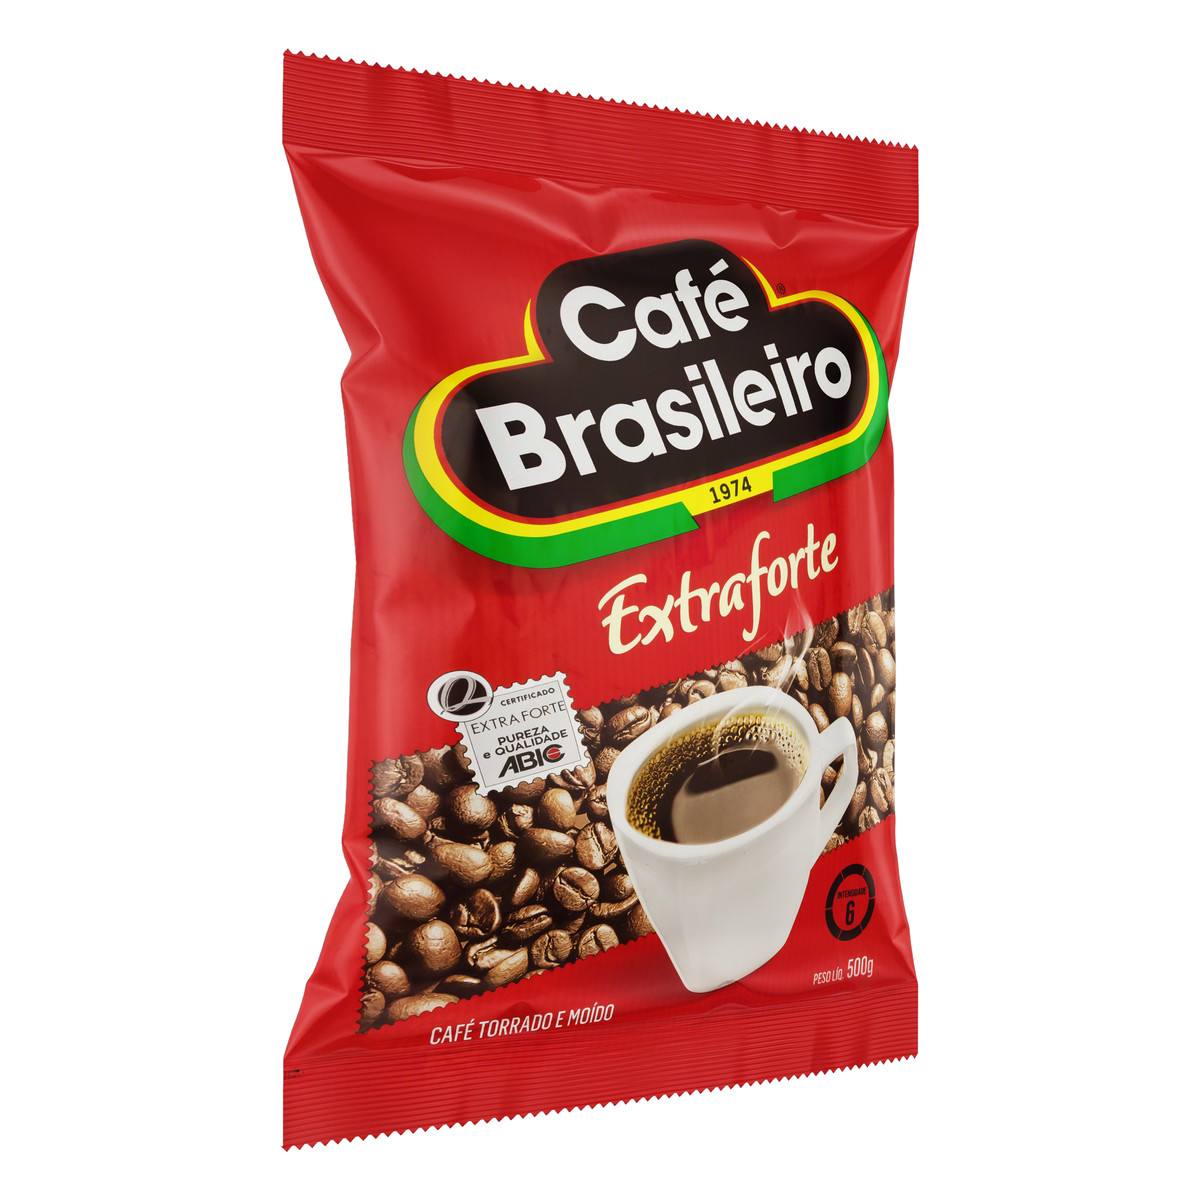 7891018001393 - CAFÉ TORRADO E MOÍDO EXTRAFORTE CAFÉ BRASILEIRO PACOTE 500G